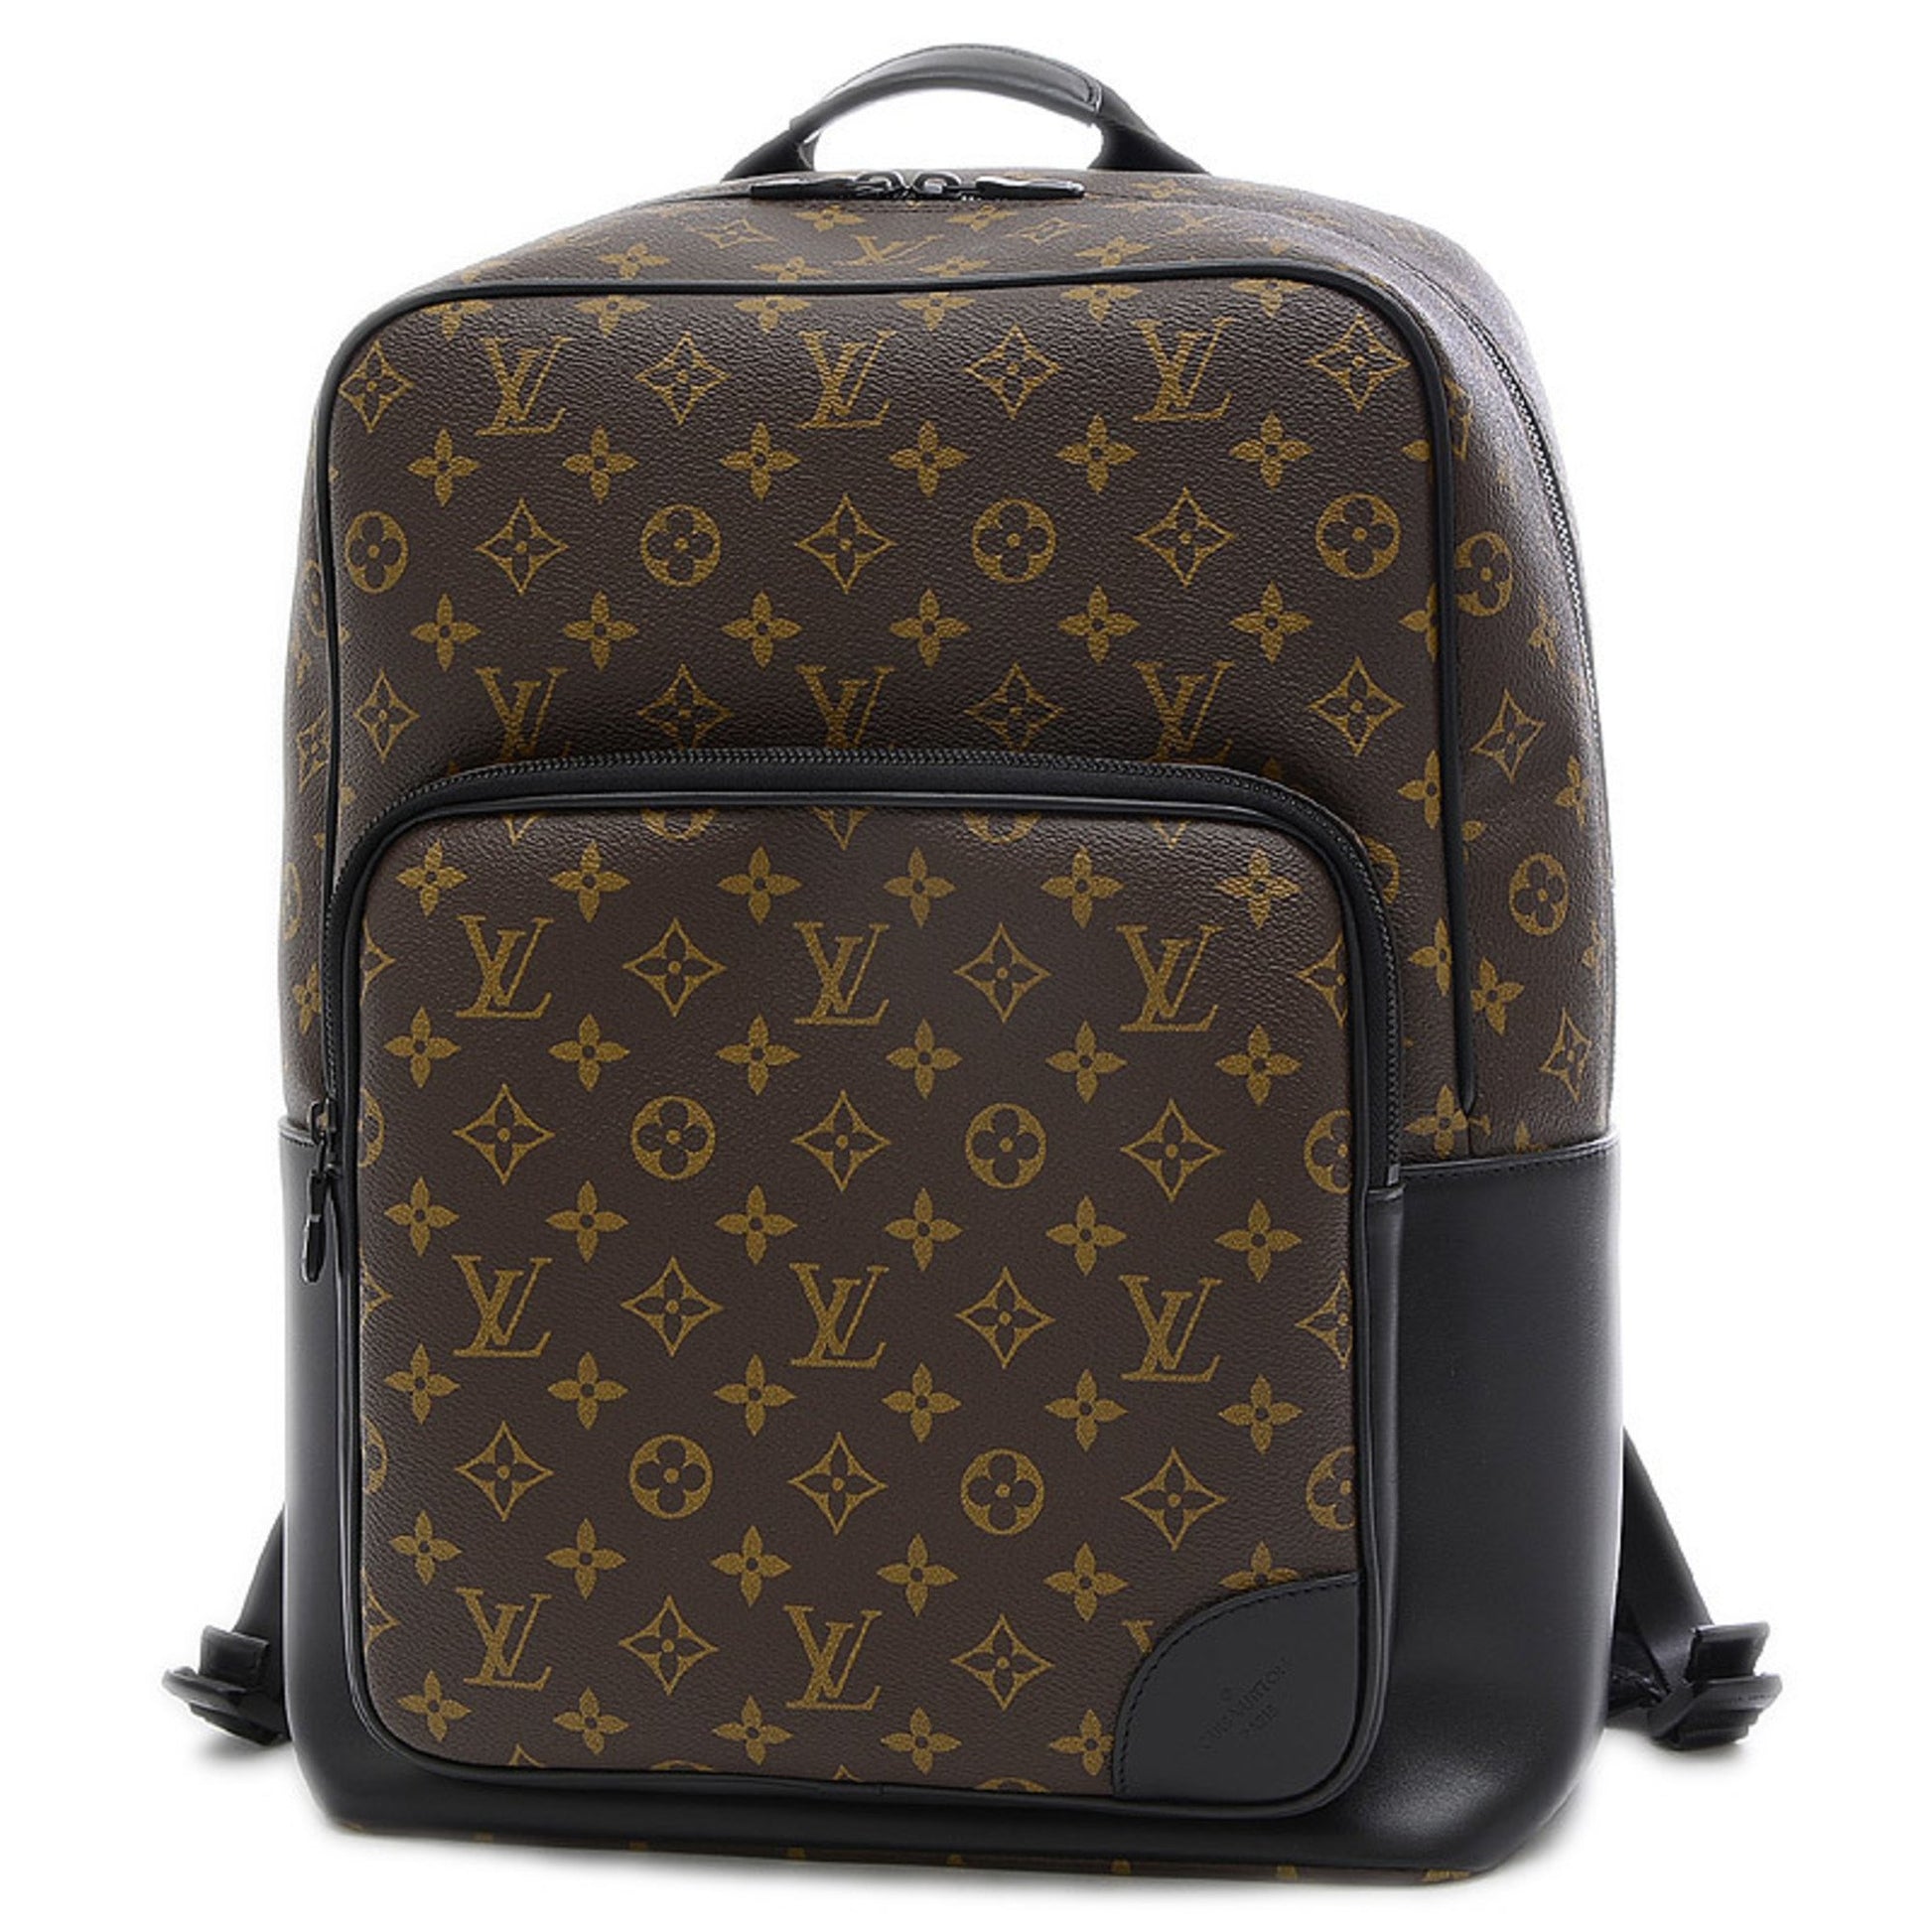 Louis Vuitton MONOGRAM MACASSAR Dean backpack (M45335)